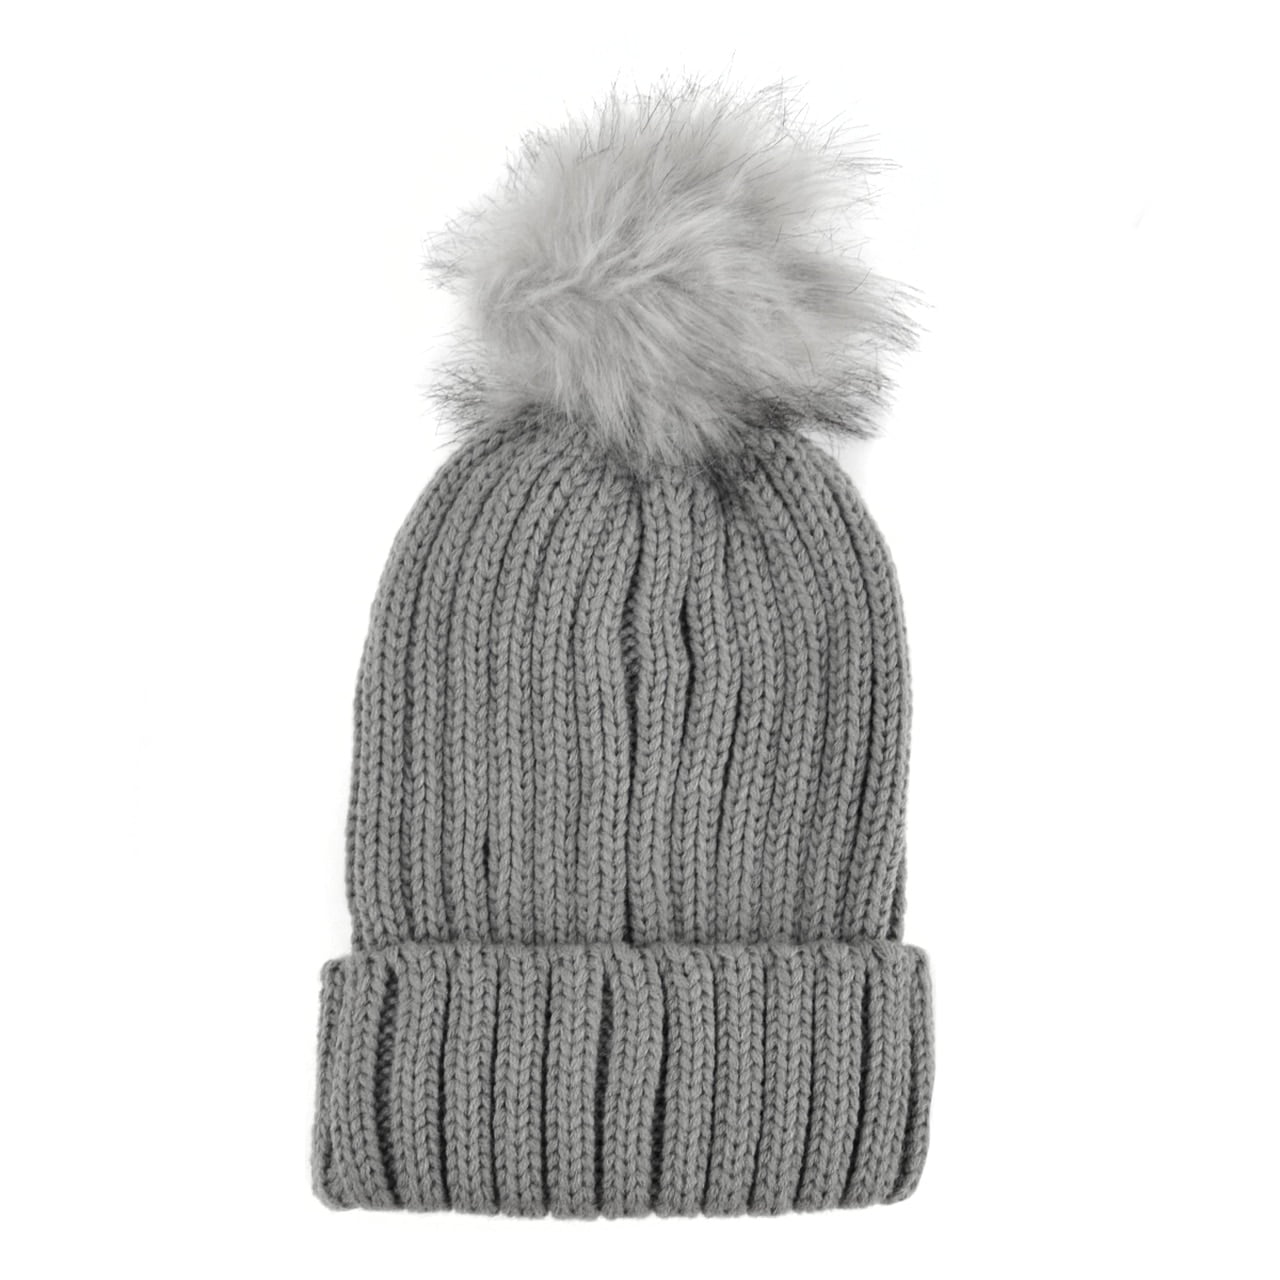 PITTSBURGH Pompom Beanie PomPom Hat Winter Toboggan Knit w POM